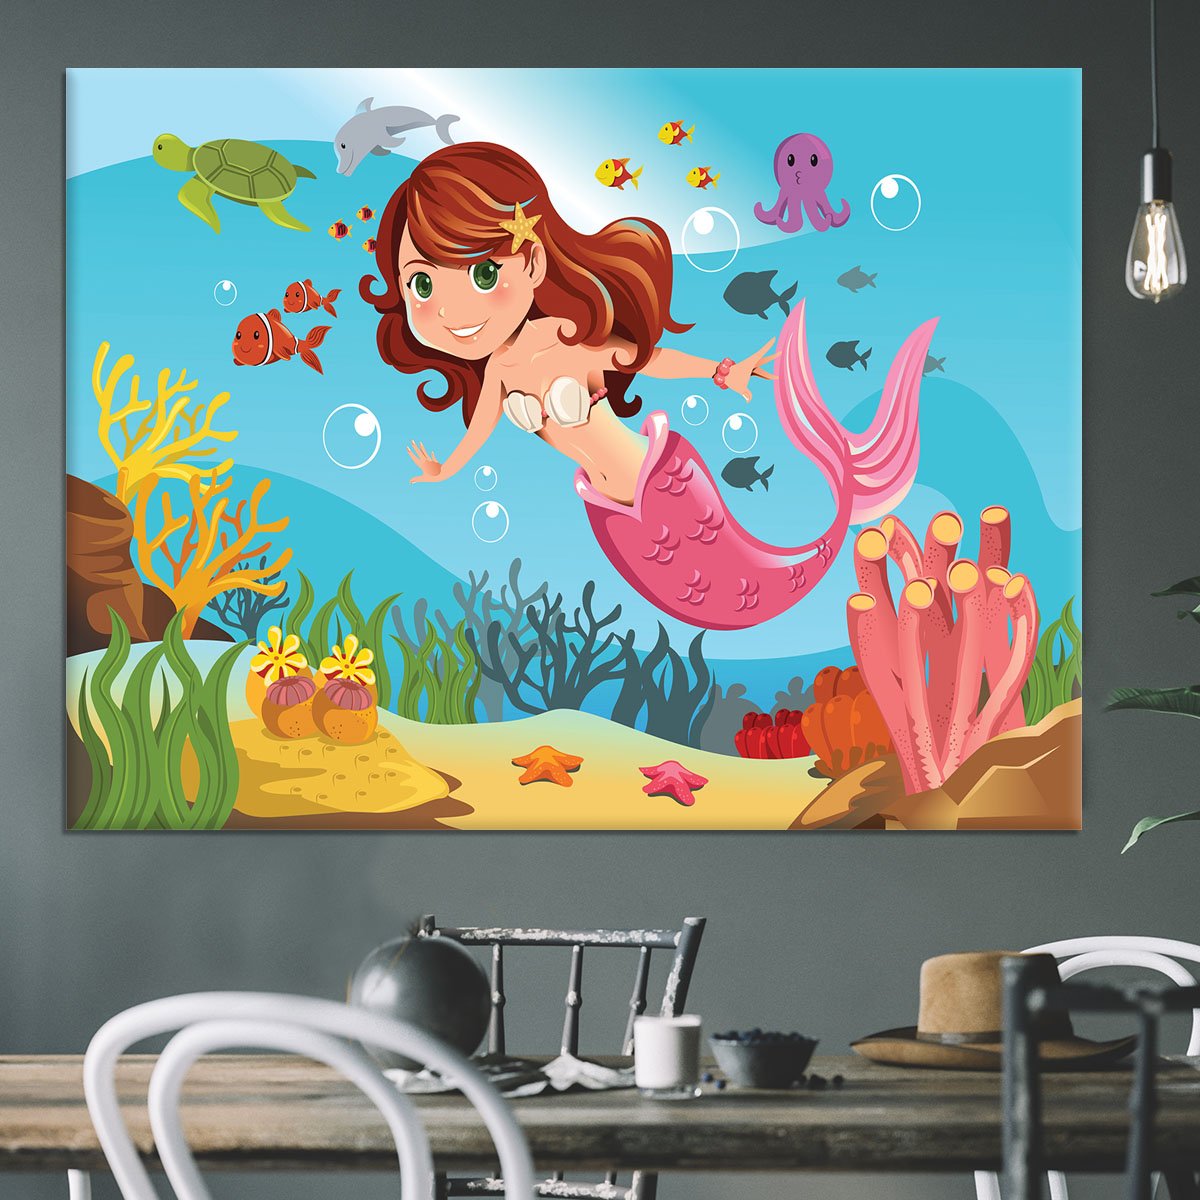 mermaid swimming underwater in the ocean Canvas Print or Poster